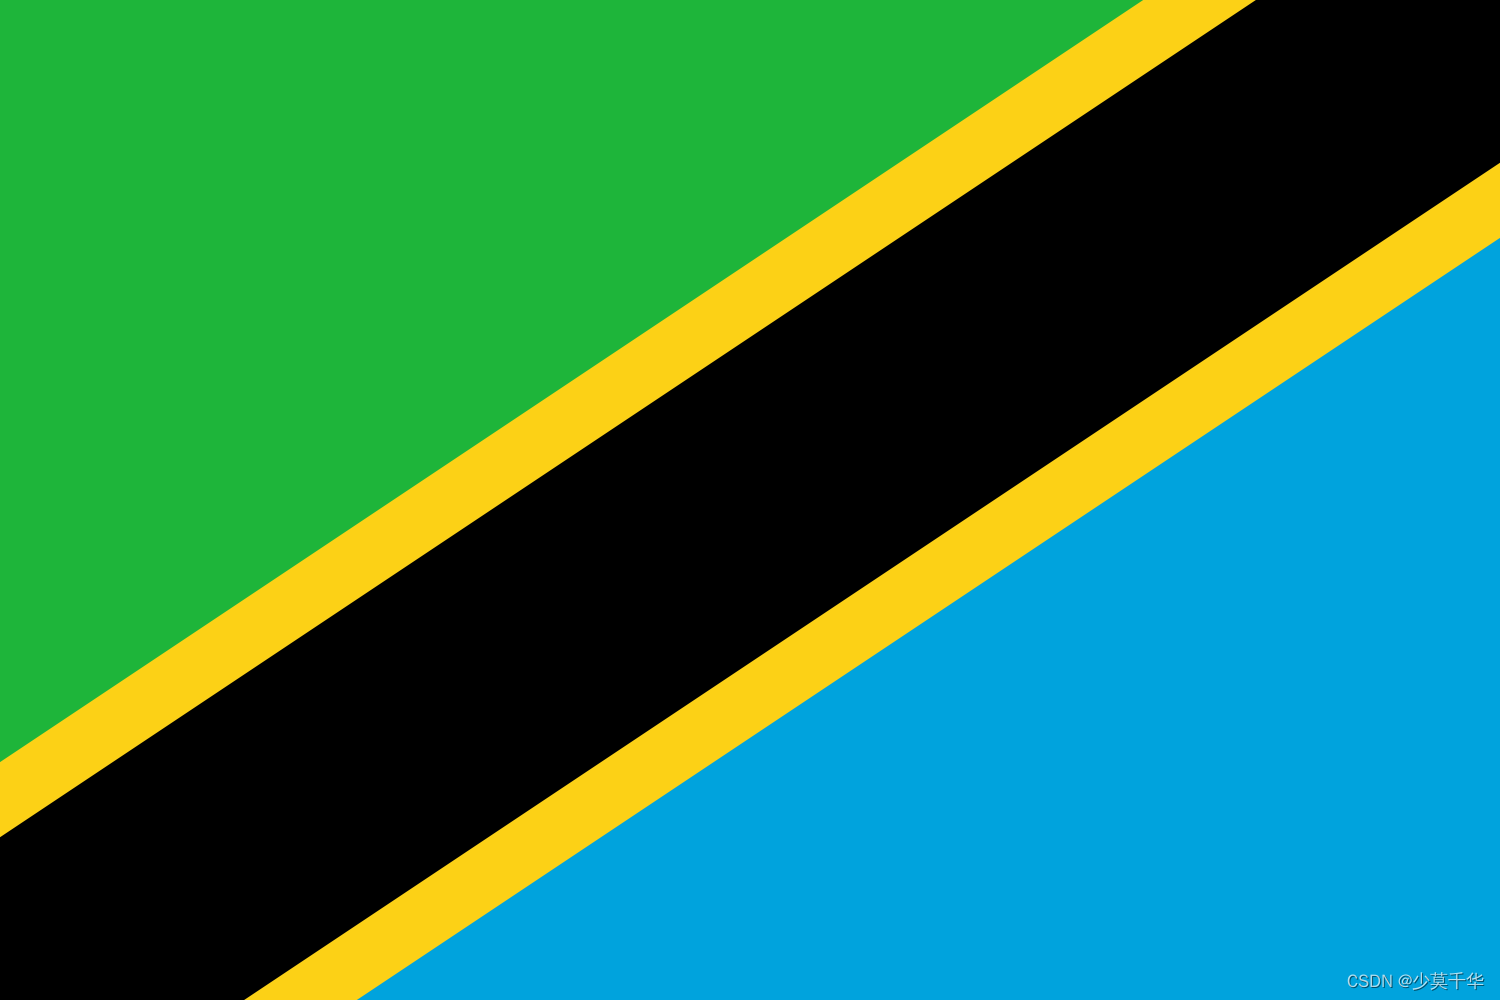 102.坦桑尼亚-坦桑尼亚联合共和国